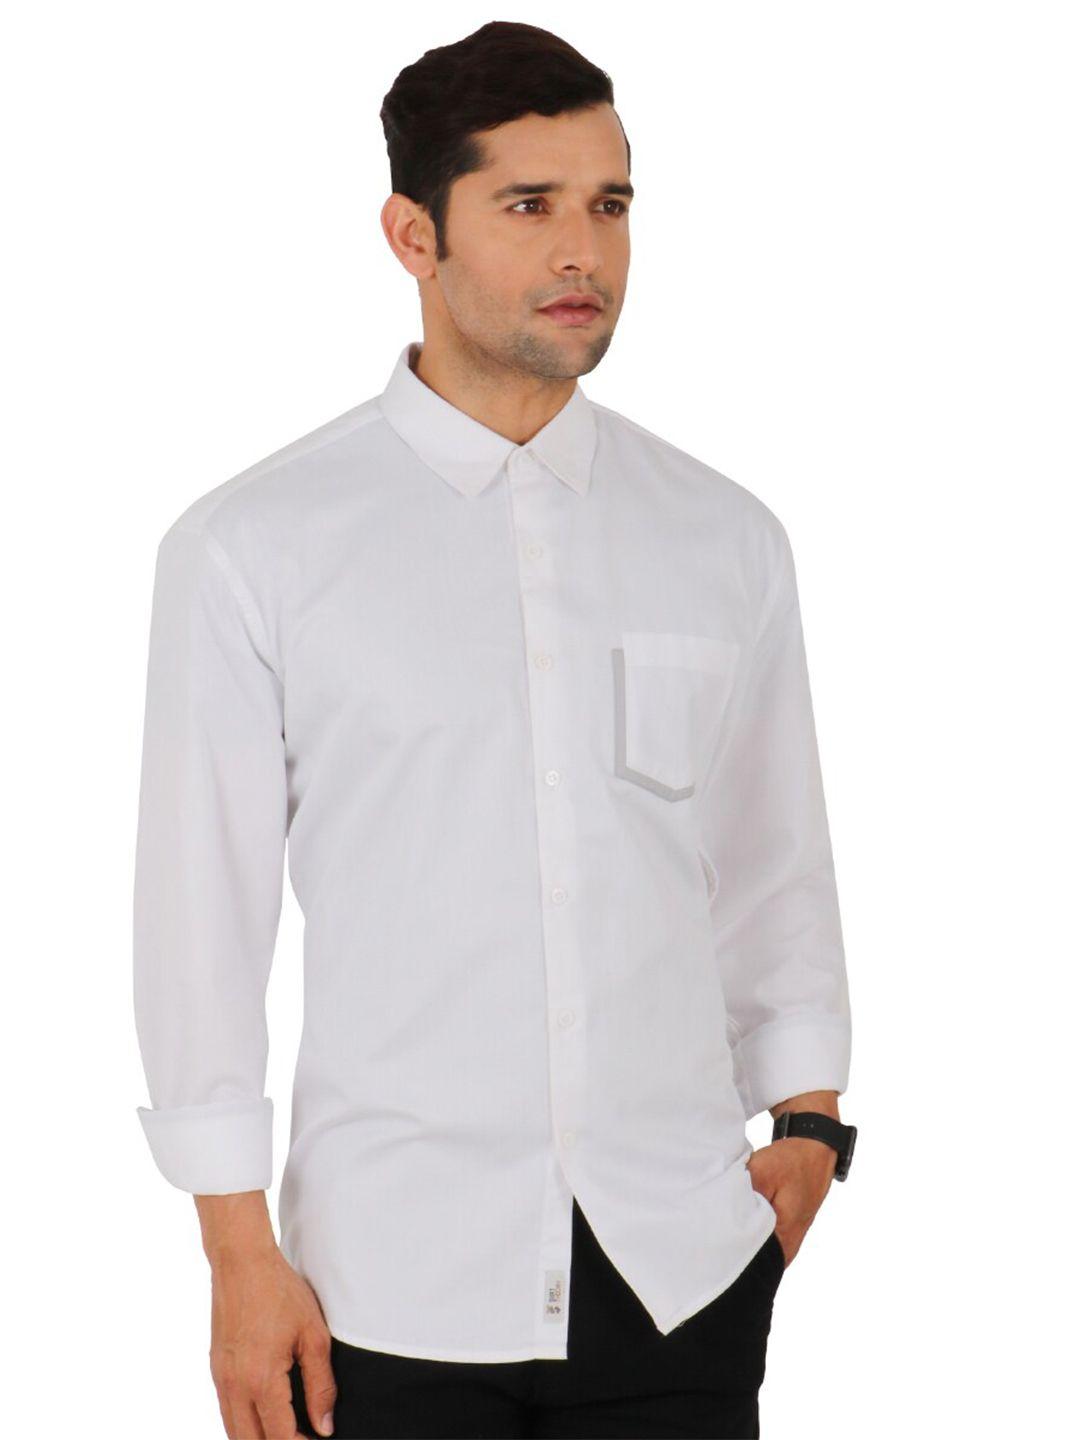 shirt theory men white casual shirt